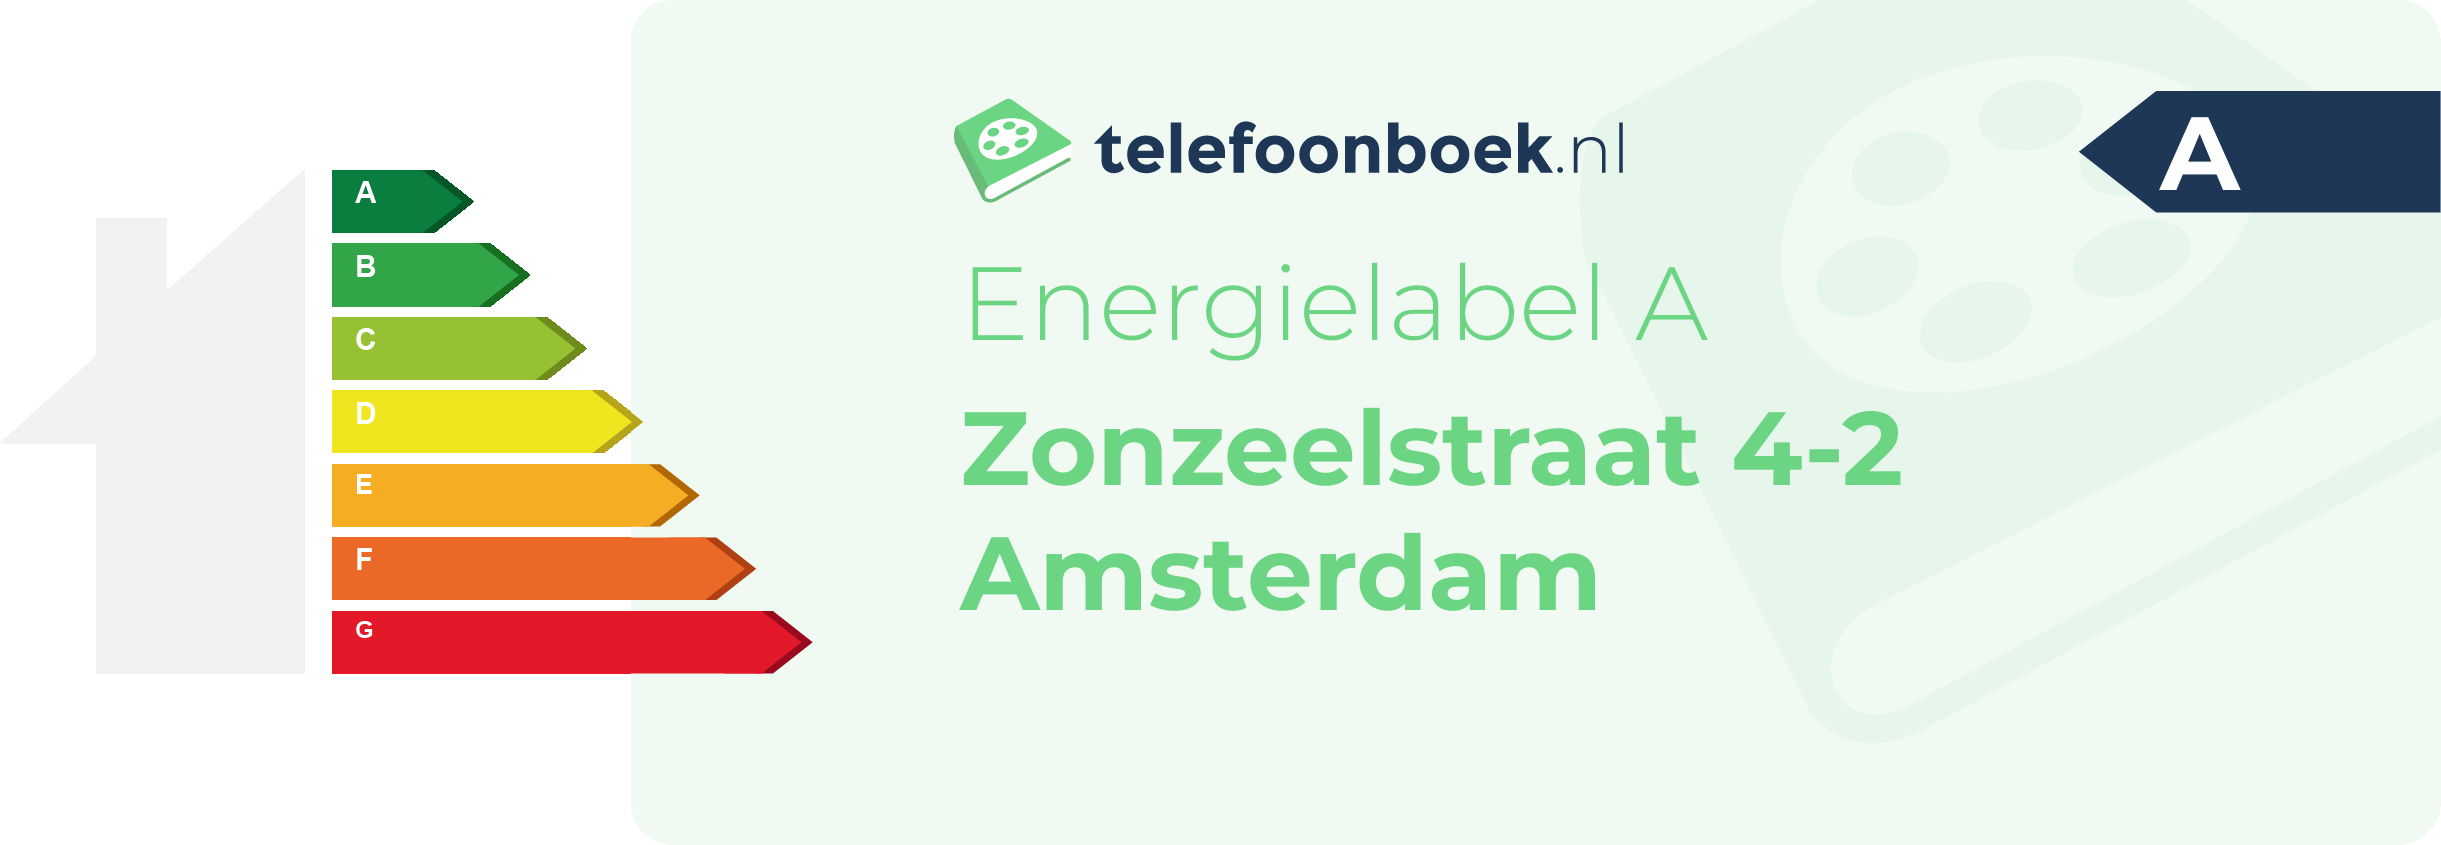 Energielabel Zonzeelstraat 4-2 Amsterdam